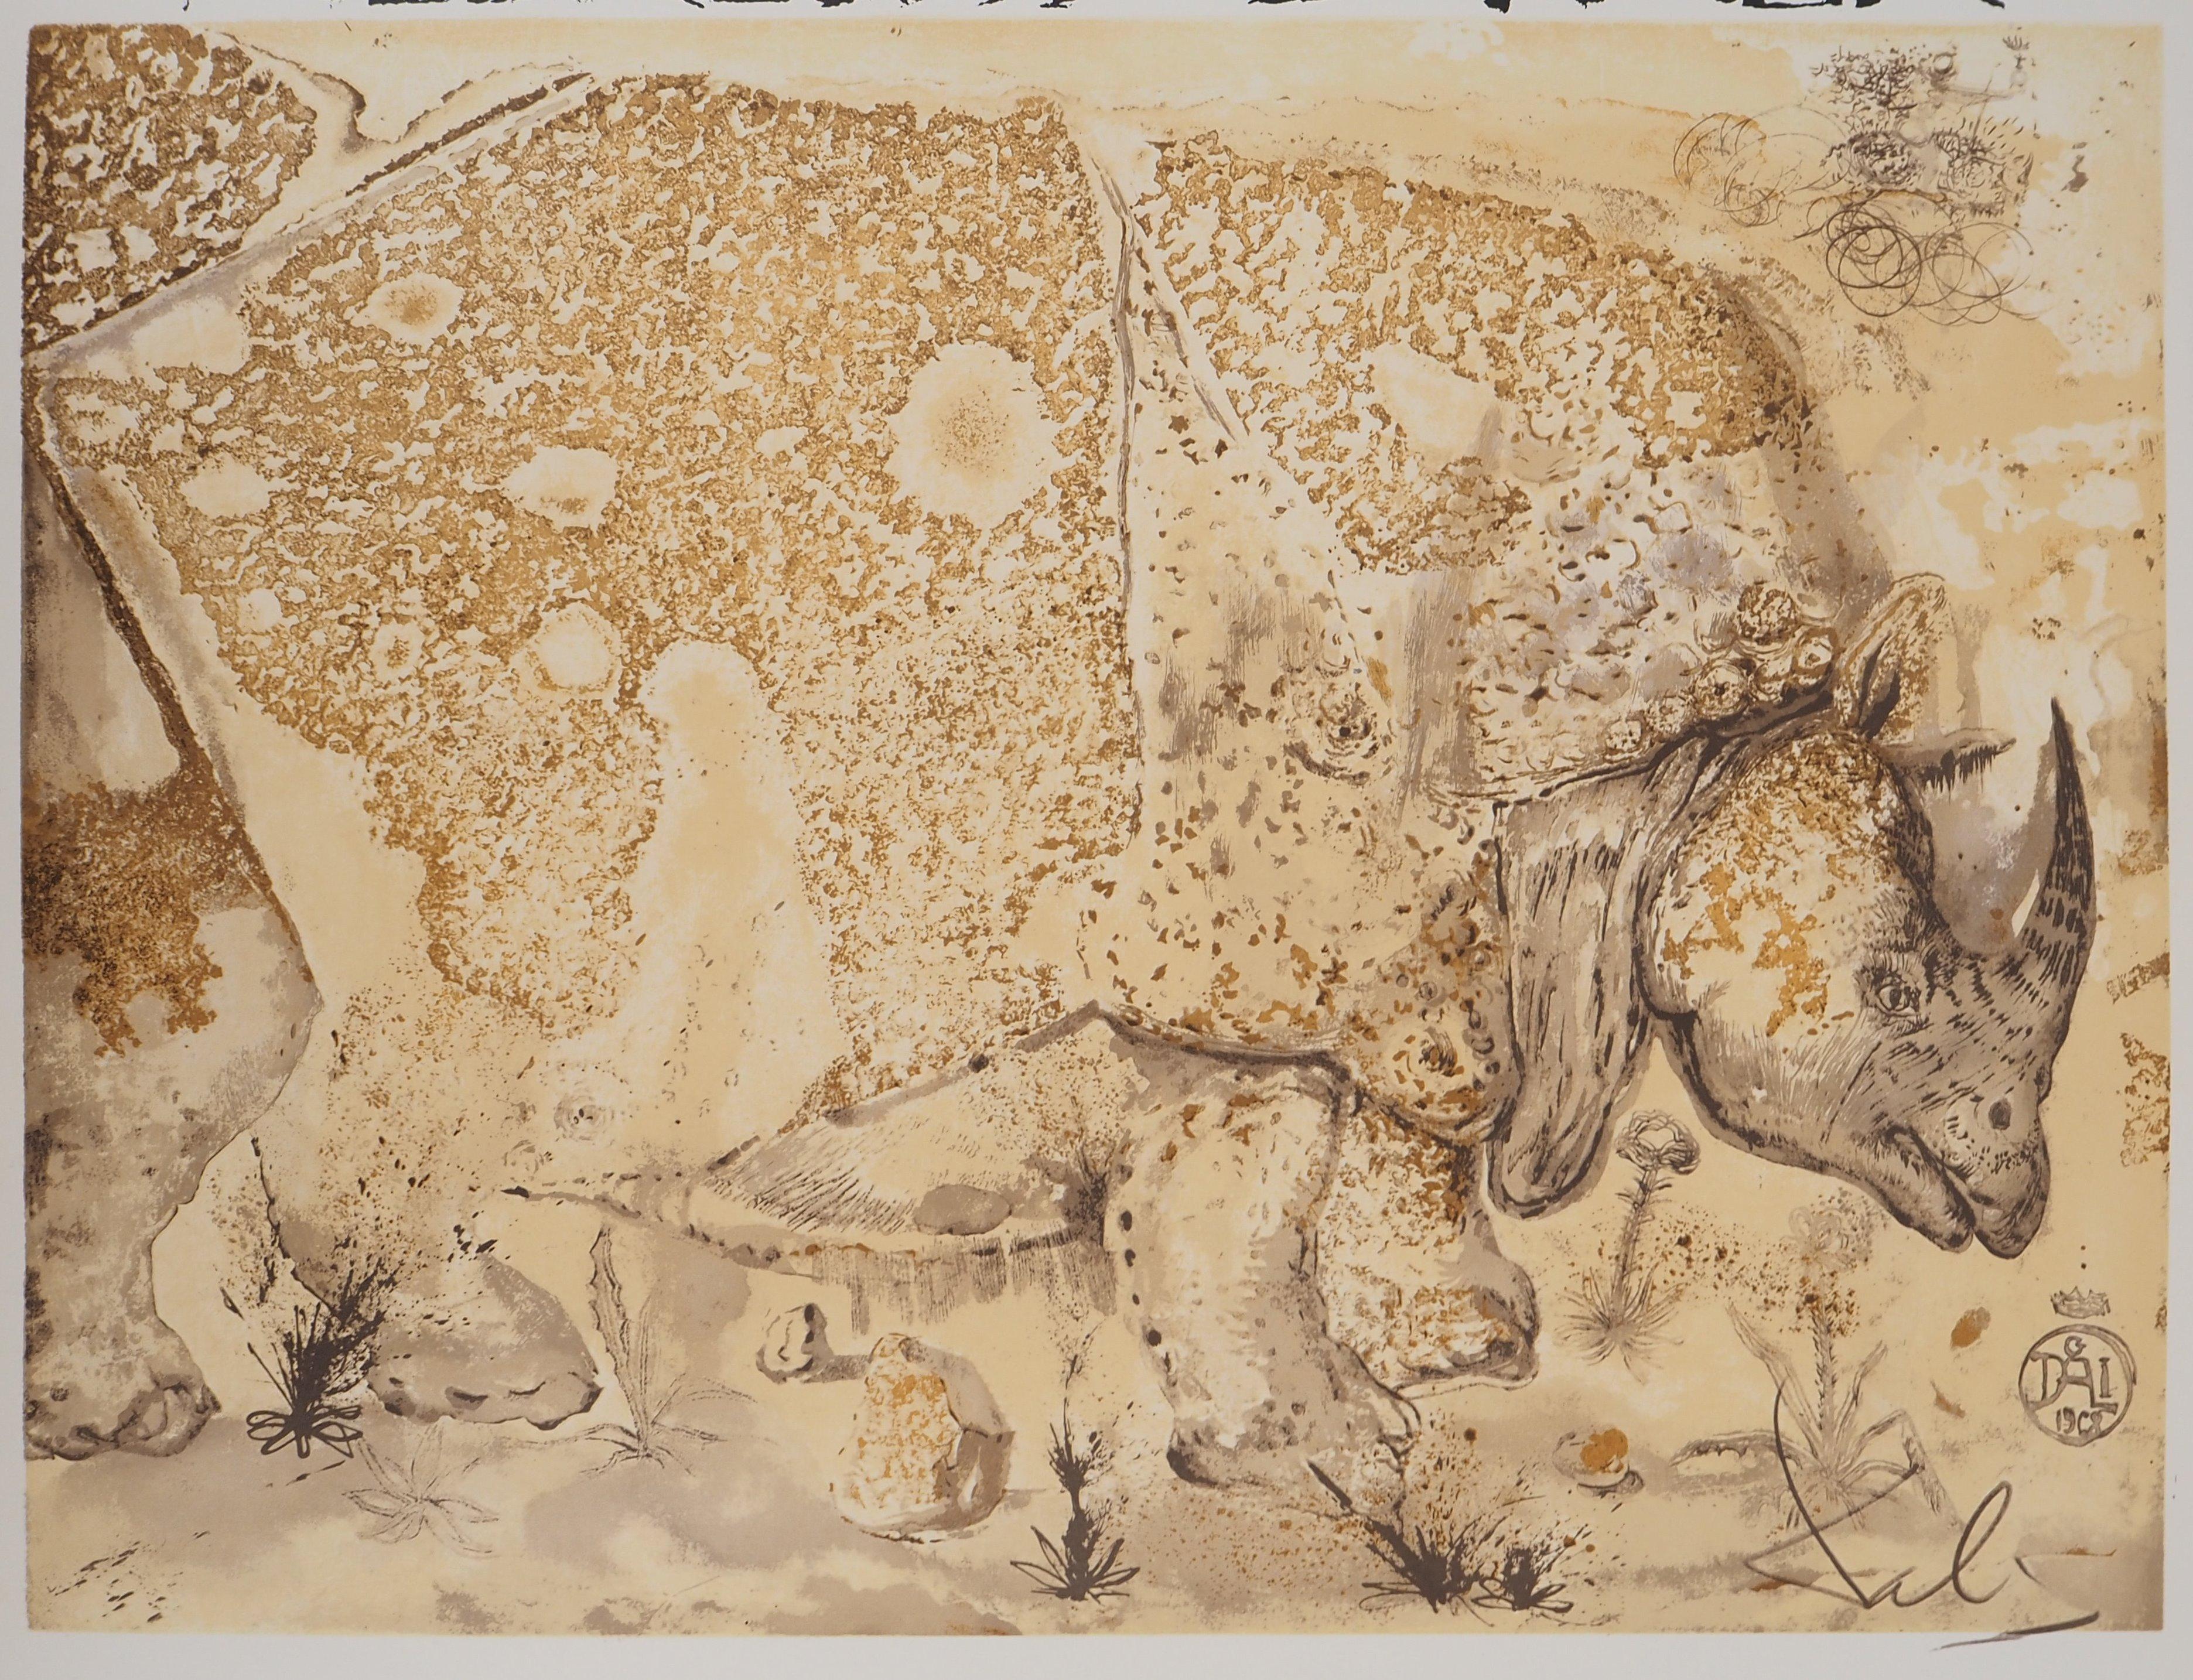 Rhinoceros, Hommage à Albrecht DURER - Affiche lithographique originale (Gaspar n° 1503 - Print de Salvador Dalí